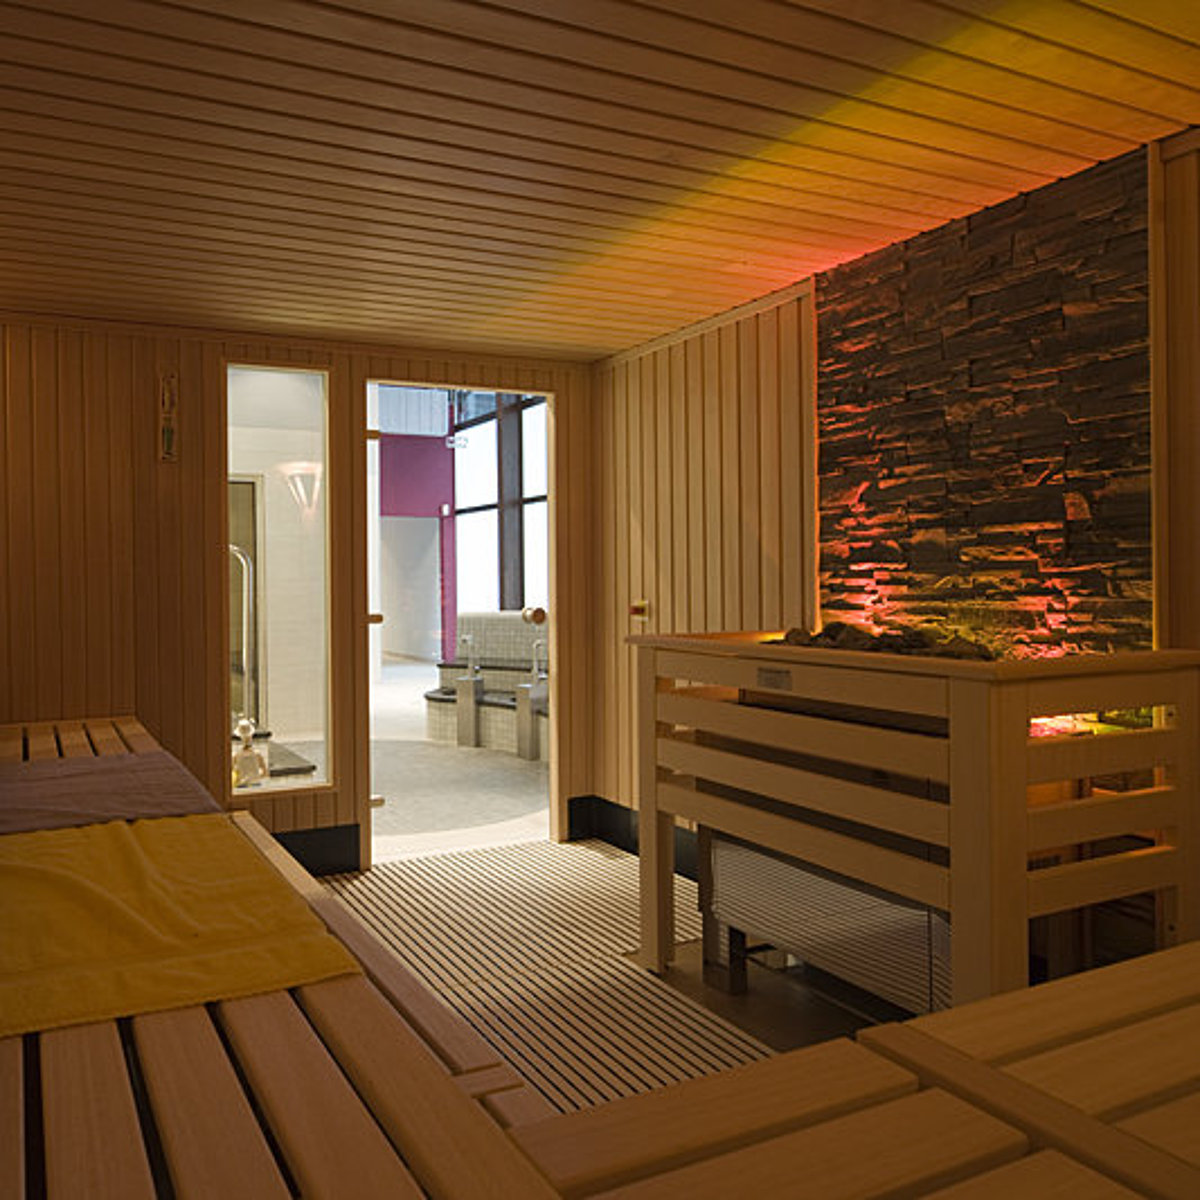 Interieur van een sauna waarvan het kachelgedeelte verlicht is.